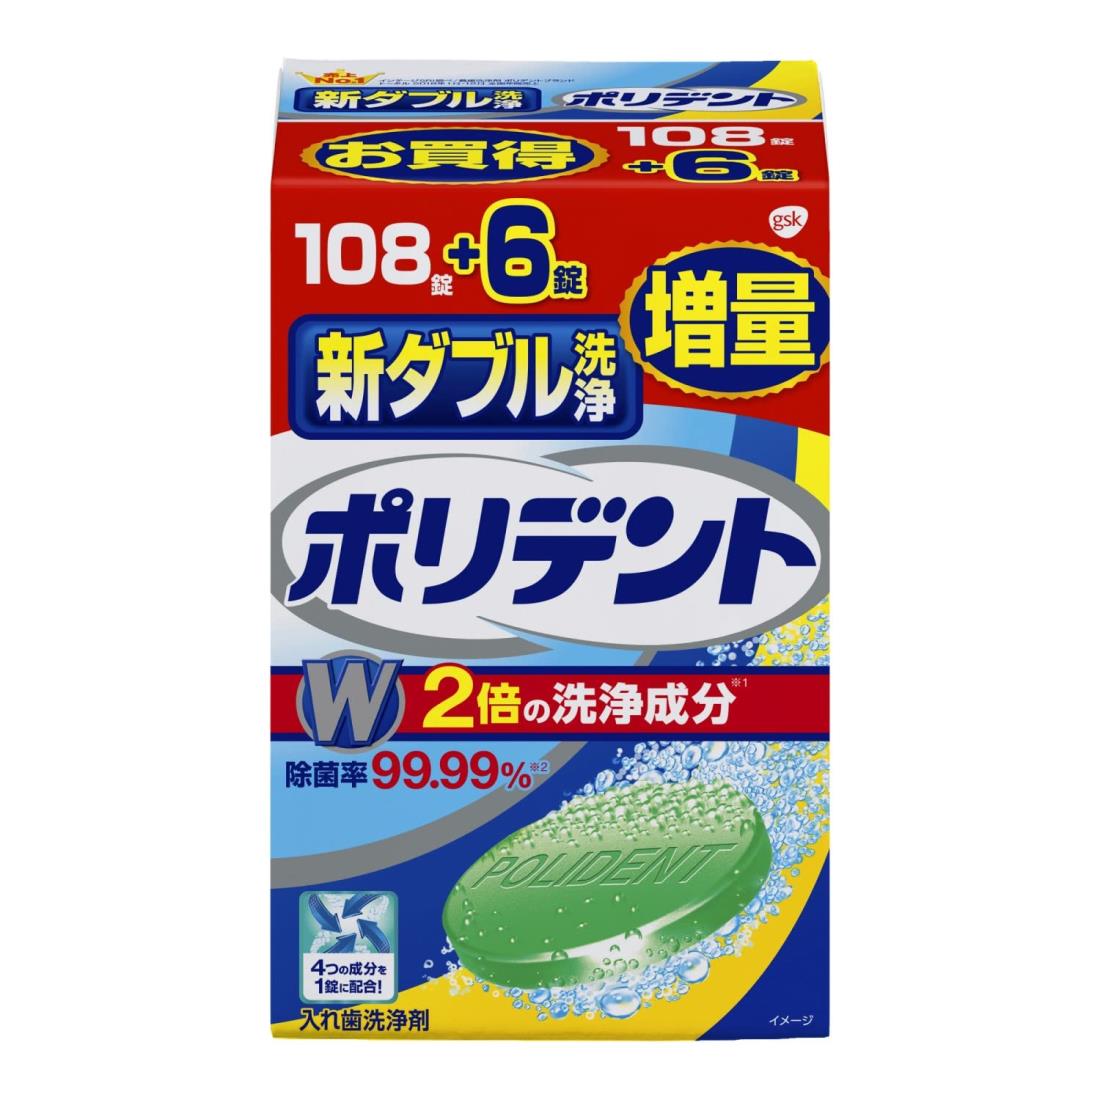 ポリデント 新ダブル洗浄 入れ歯洗浄剤 108錠+6錠増量品 99.99%除菌